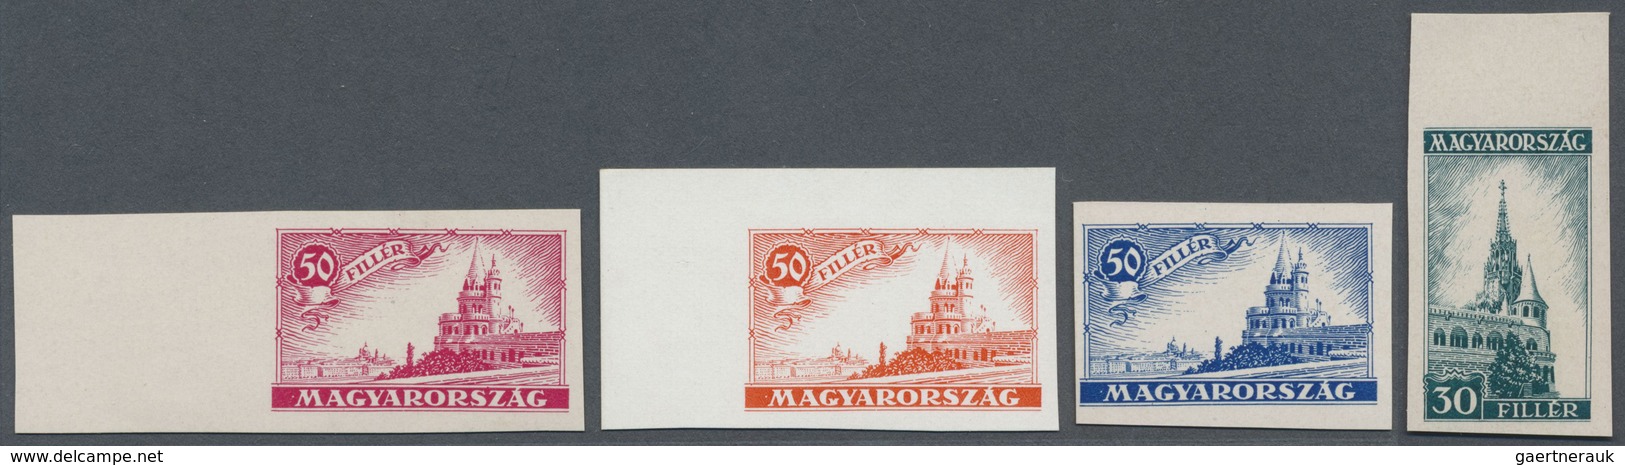 (*) Ungarn: 1926: "30 FILLER MAGYARORSZAG" Or "50 FILLER" Showing The Matthias Cathedral ECKERLIN ESSAYS - Brieven En Documenten